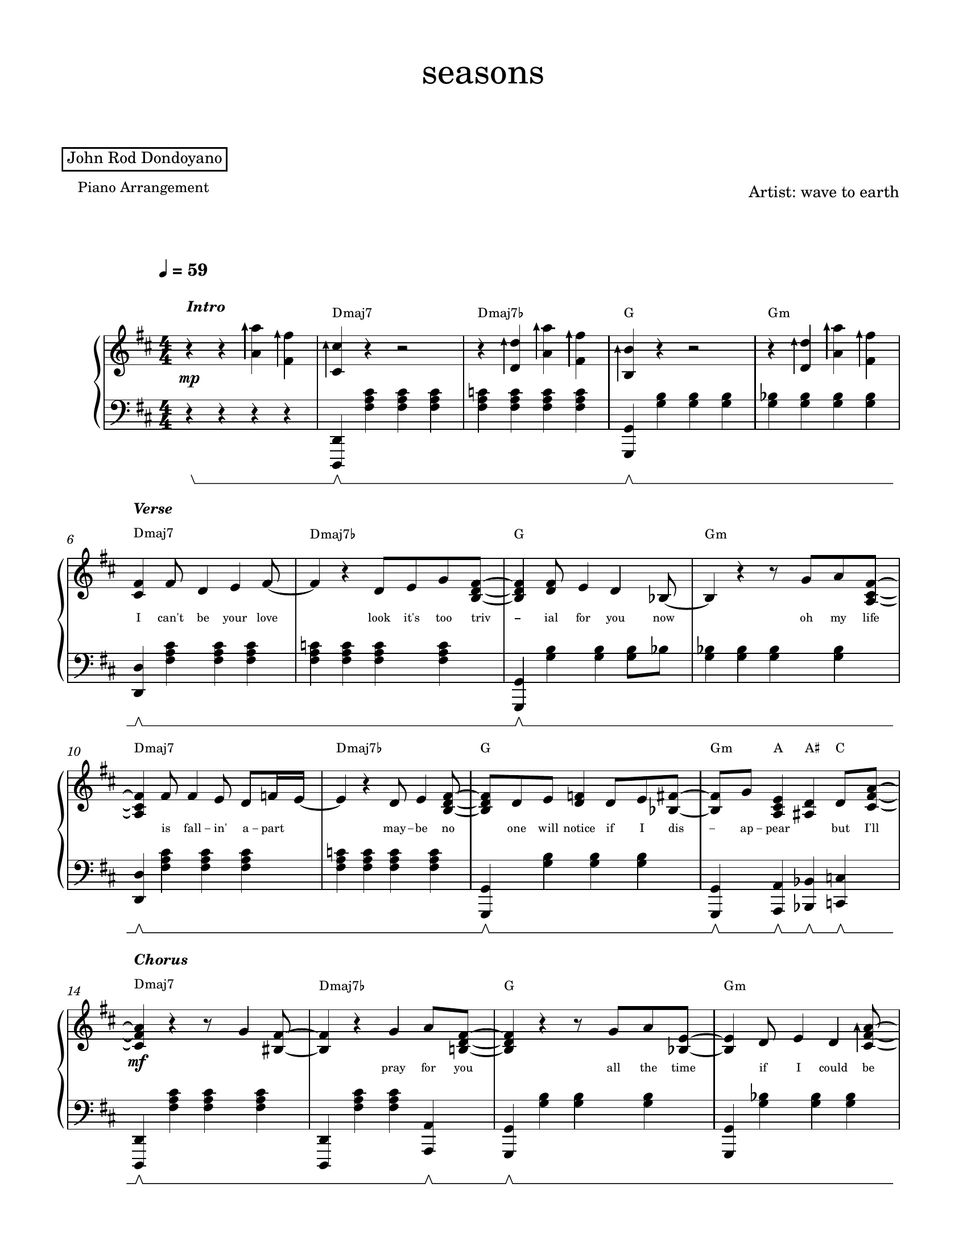 wave to earth - seasons (PIANO SHEET) by John Rod Dondoyano